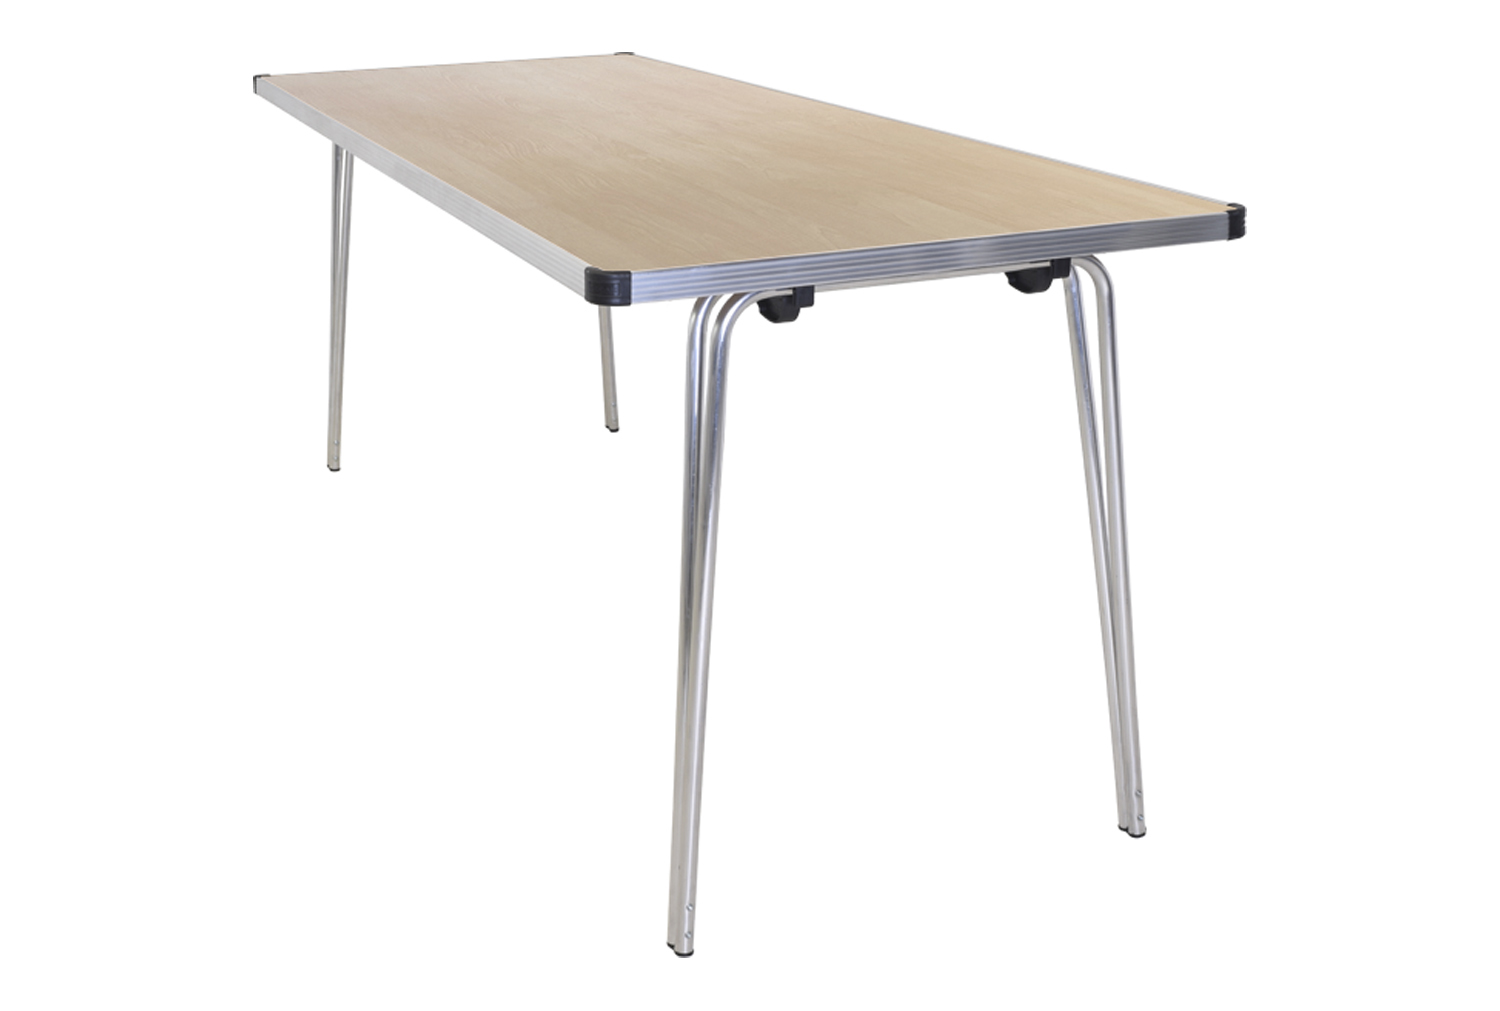 Gopak Contour Plus Folding Table, 183wx76d (cm), Maple